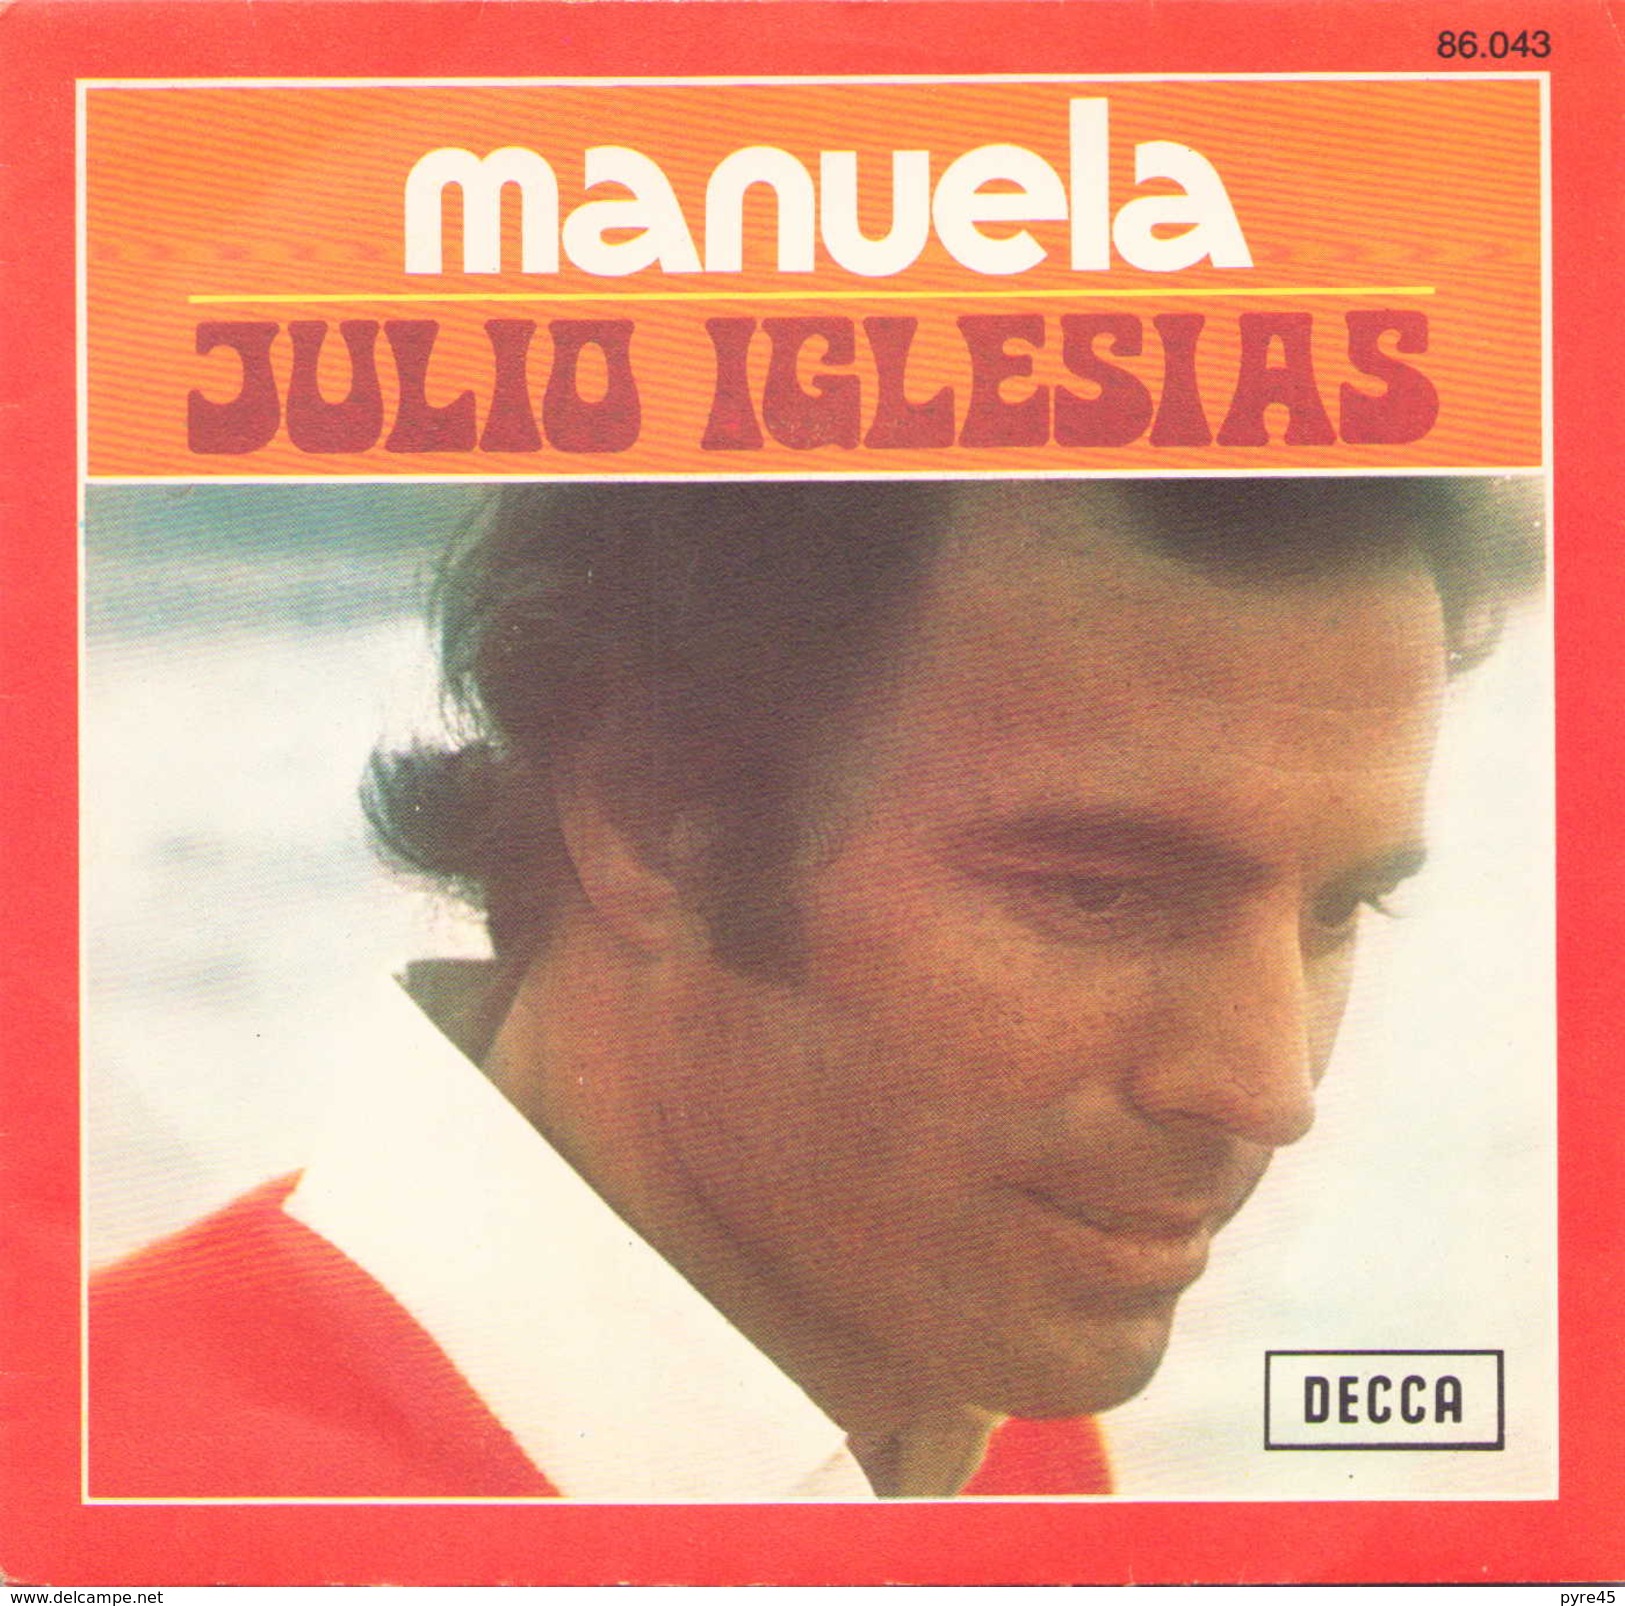 45 TOURS JULIO IGLESIAS DECCA 86043 MANUELA / DICEN - Other - Spanish Music